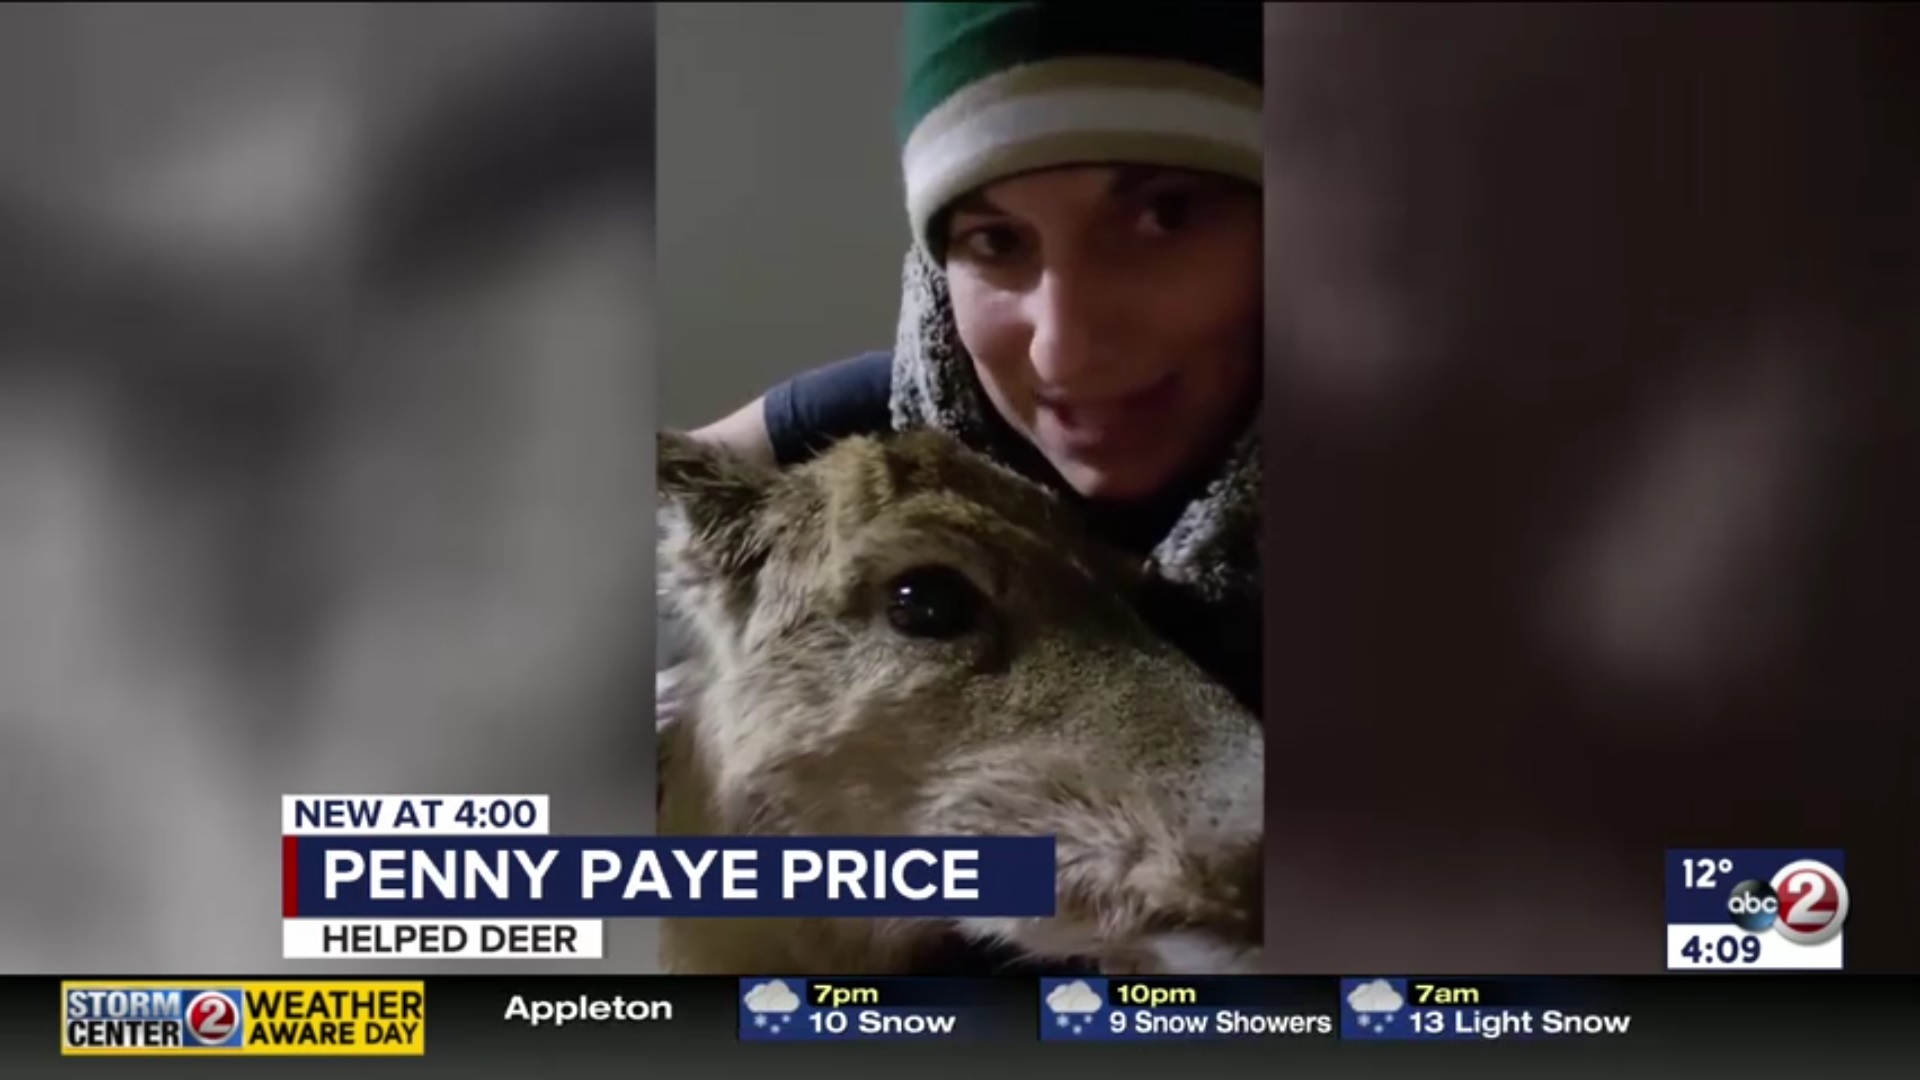 Penny Paye Price: Helped Deer